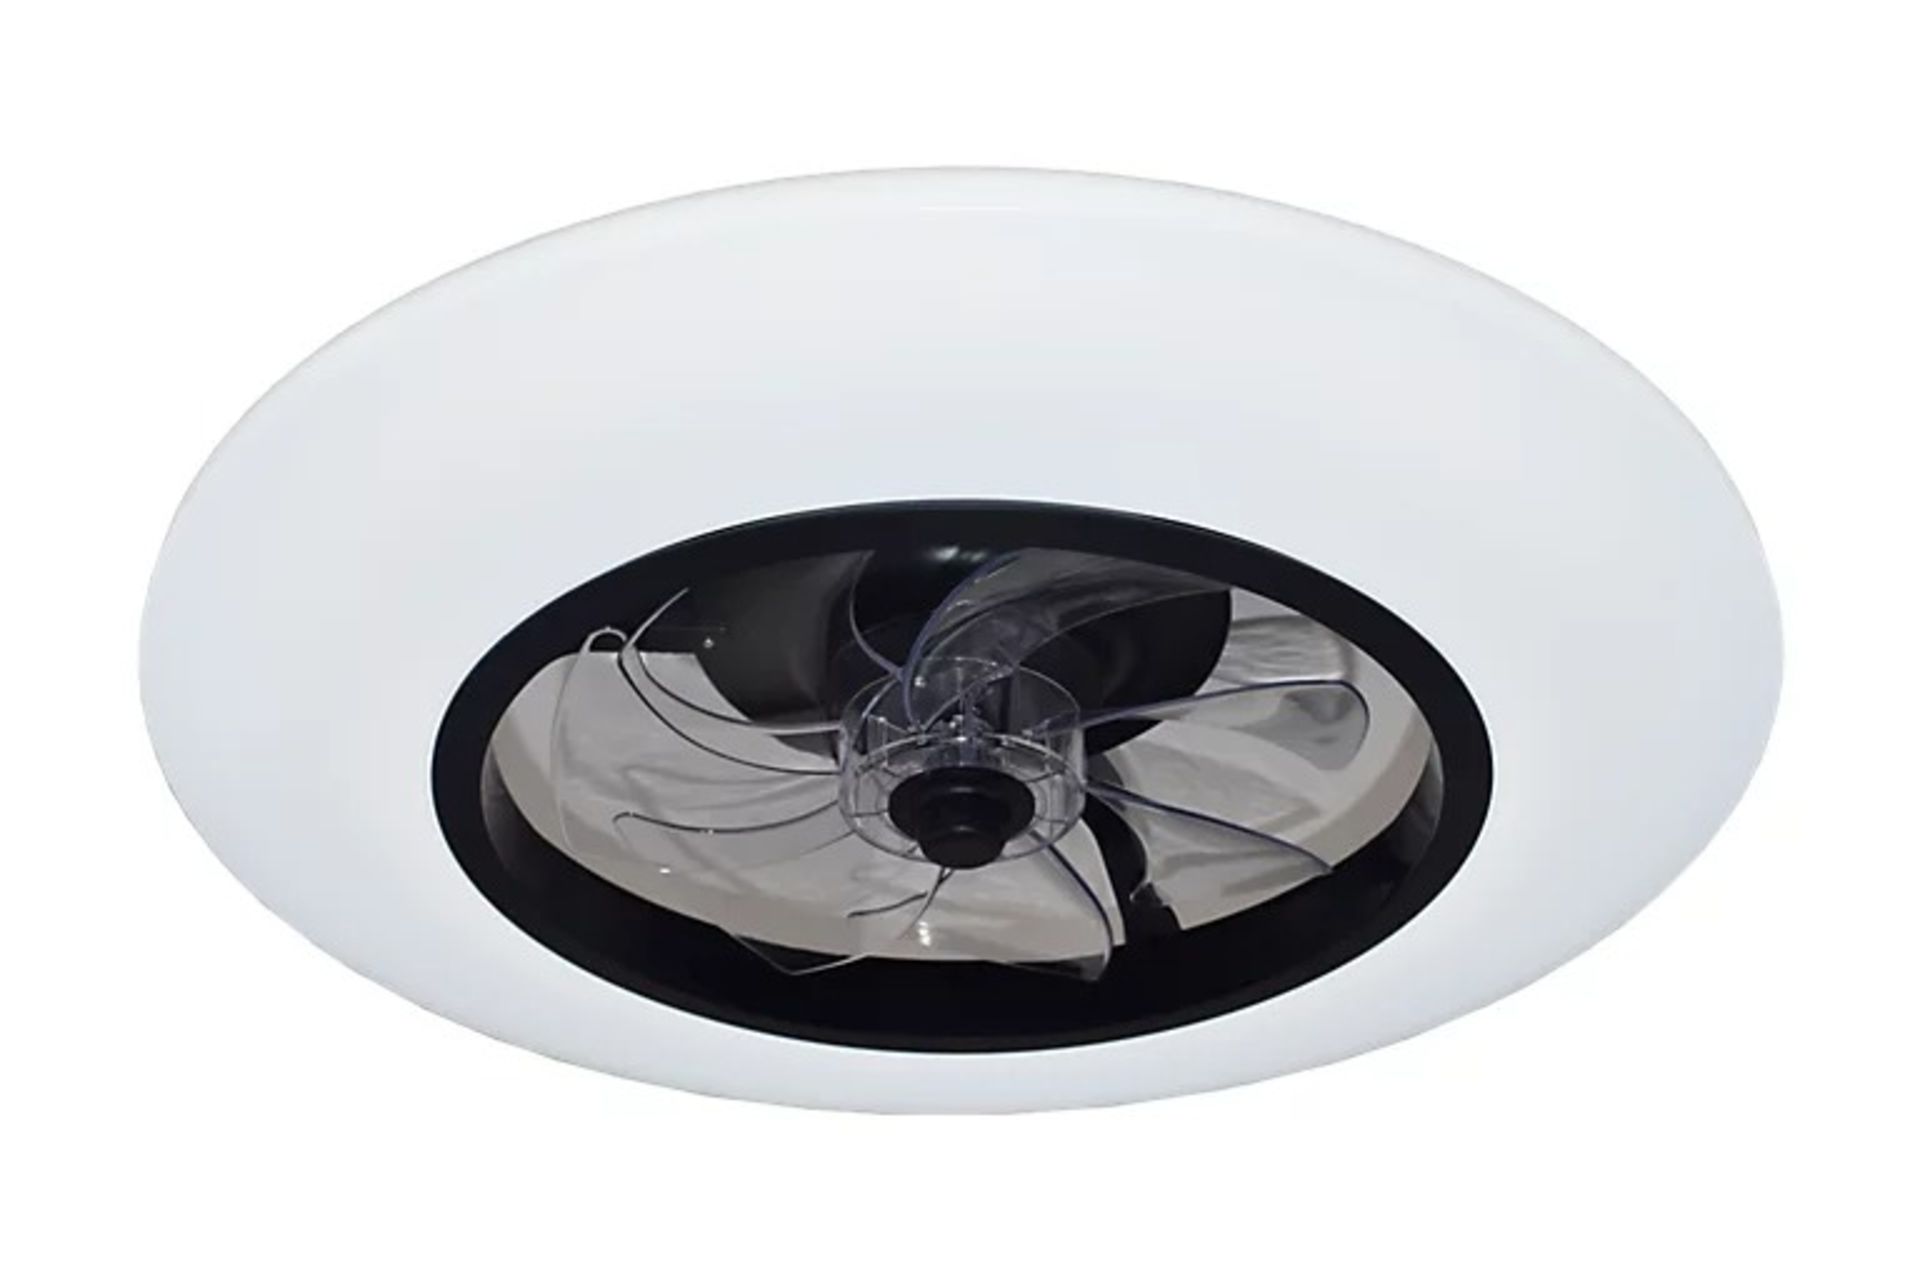 GoodHome Hewish Modern Black & white LED Ceiling fan light - ER47